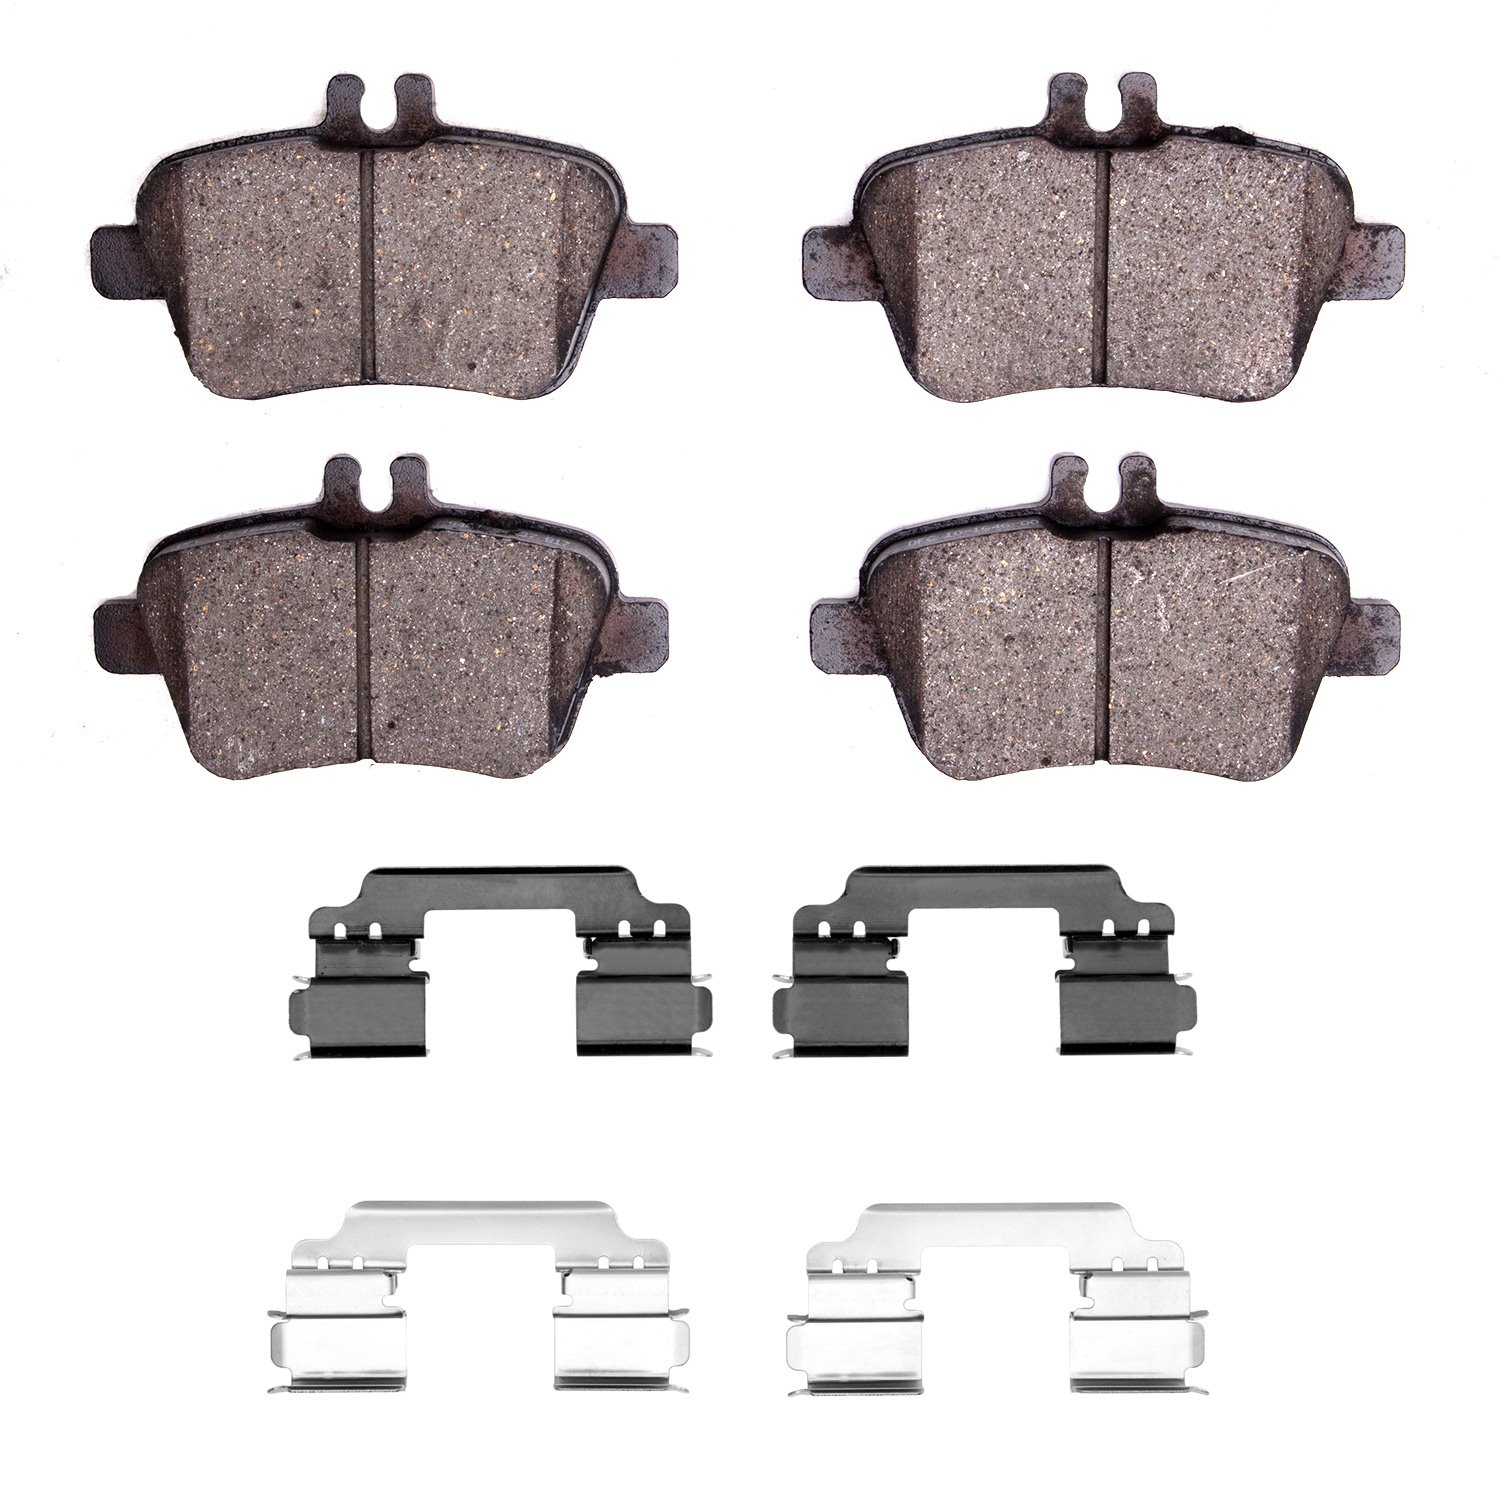 1310-1646-03 3000-Series Ceramic Brake Pads & Hardware Kit, 2014-2019 Mercedes-Benz, Position: Rear